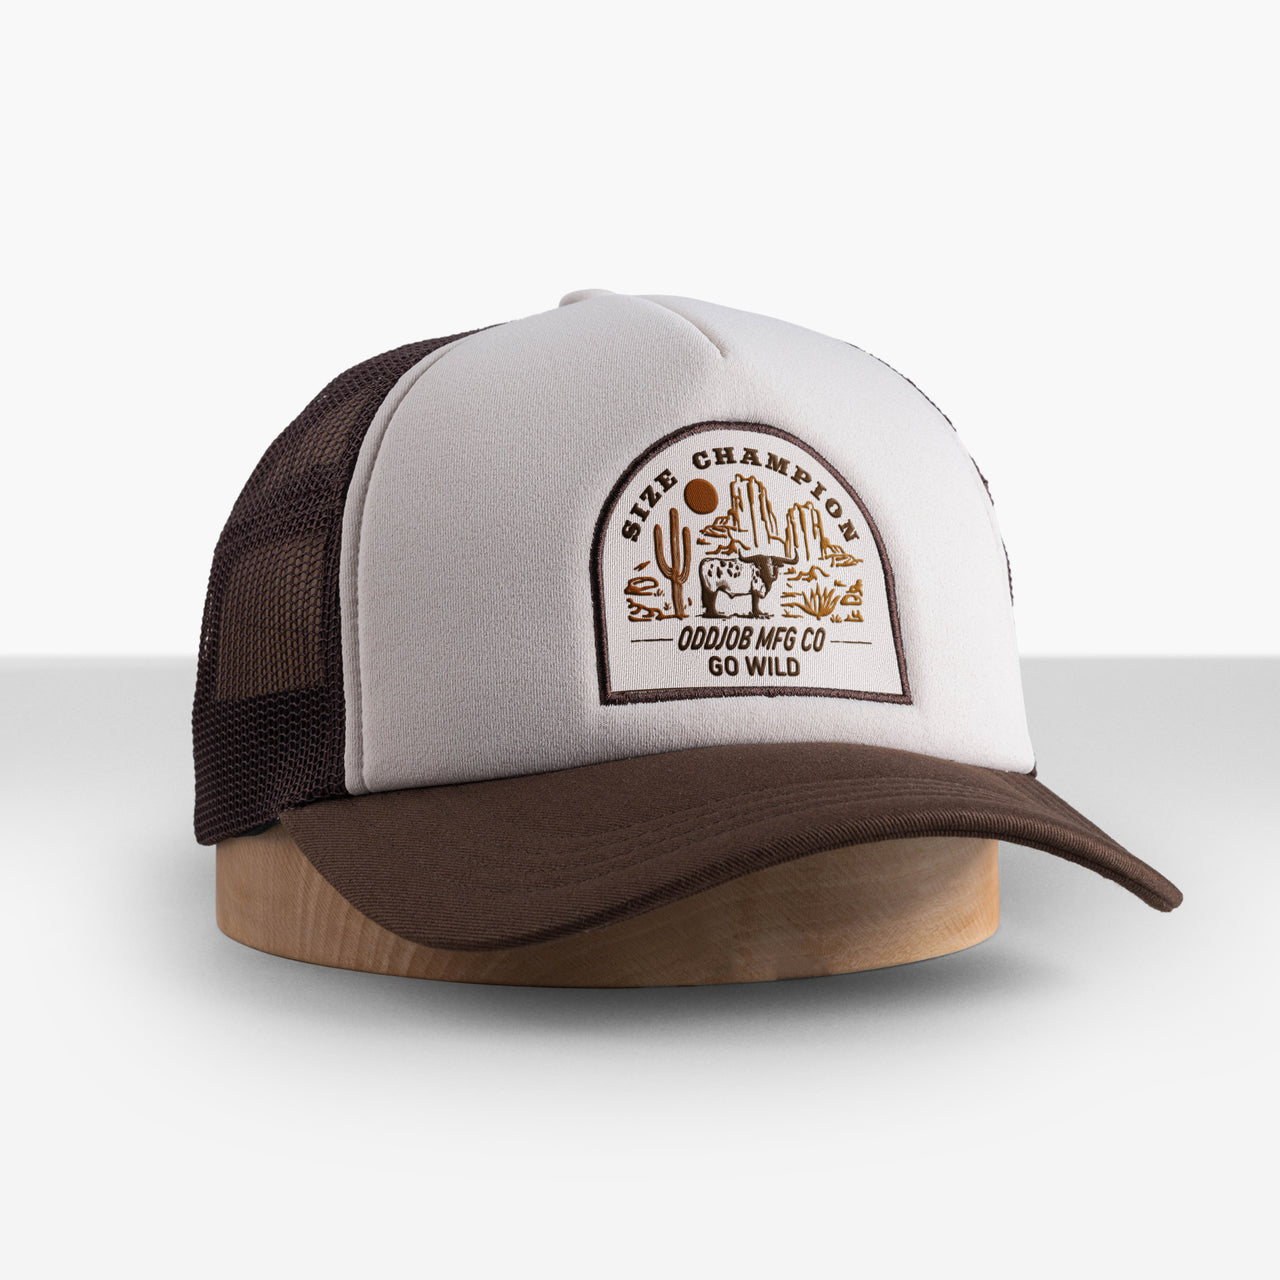 Men's trucker hats, Trucker Cap